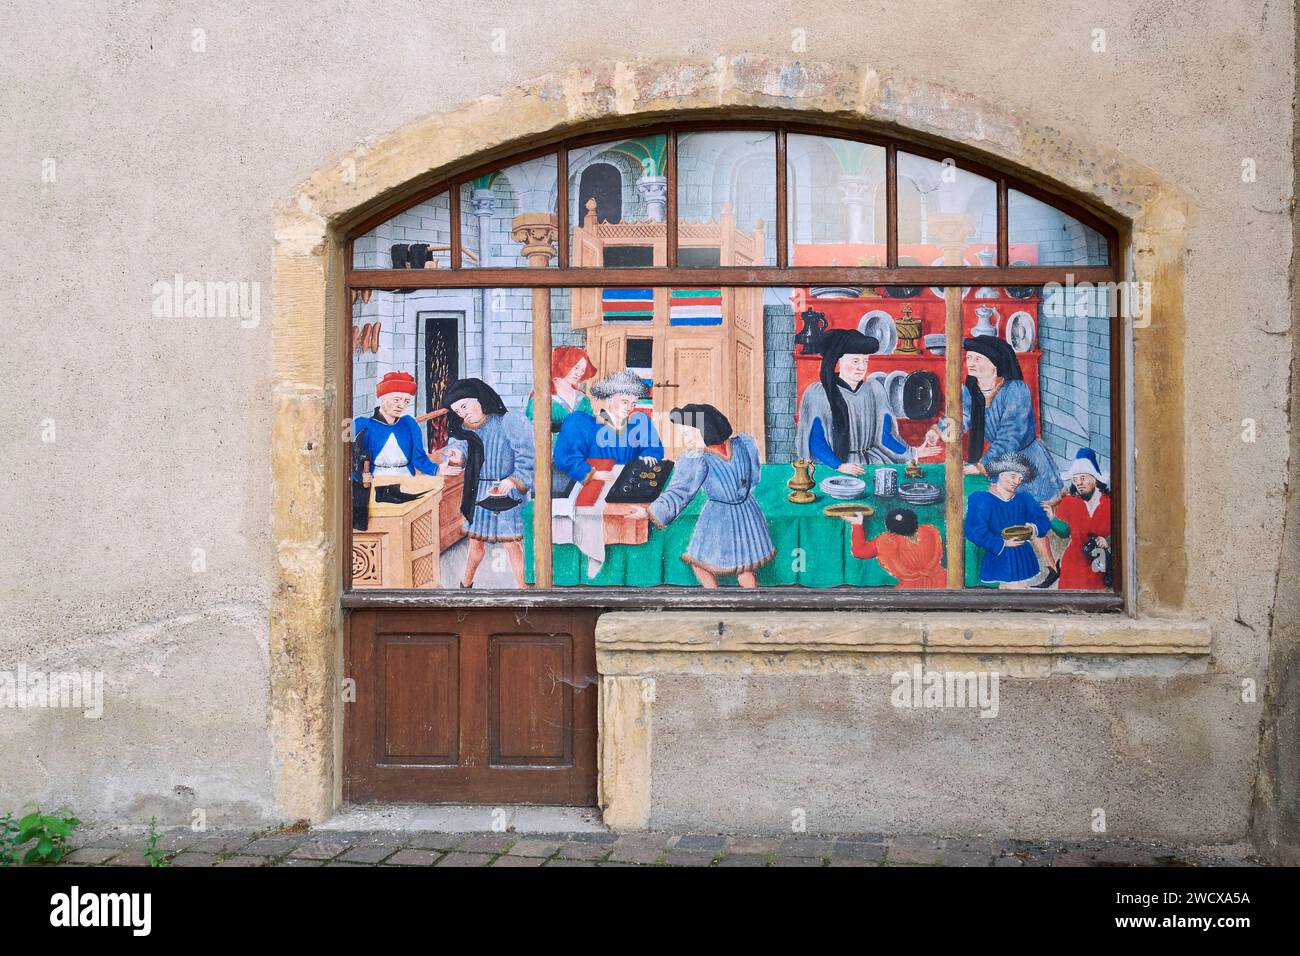 Frankreich, Mosel, Metz, das Cour d'Or Museum von Metz Metropole, das Chevremont Dachgeschoss beherbergt die mittelalterliche religiöse Statue der Sammlungen, Fresken Stockfoto